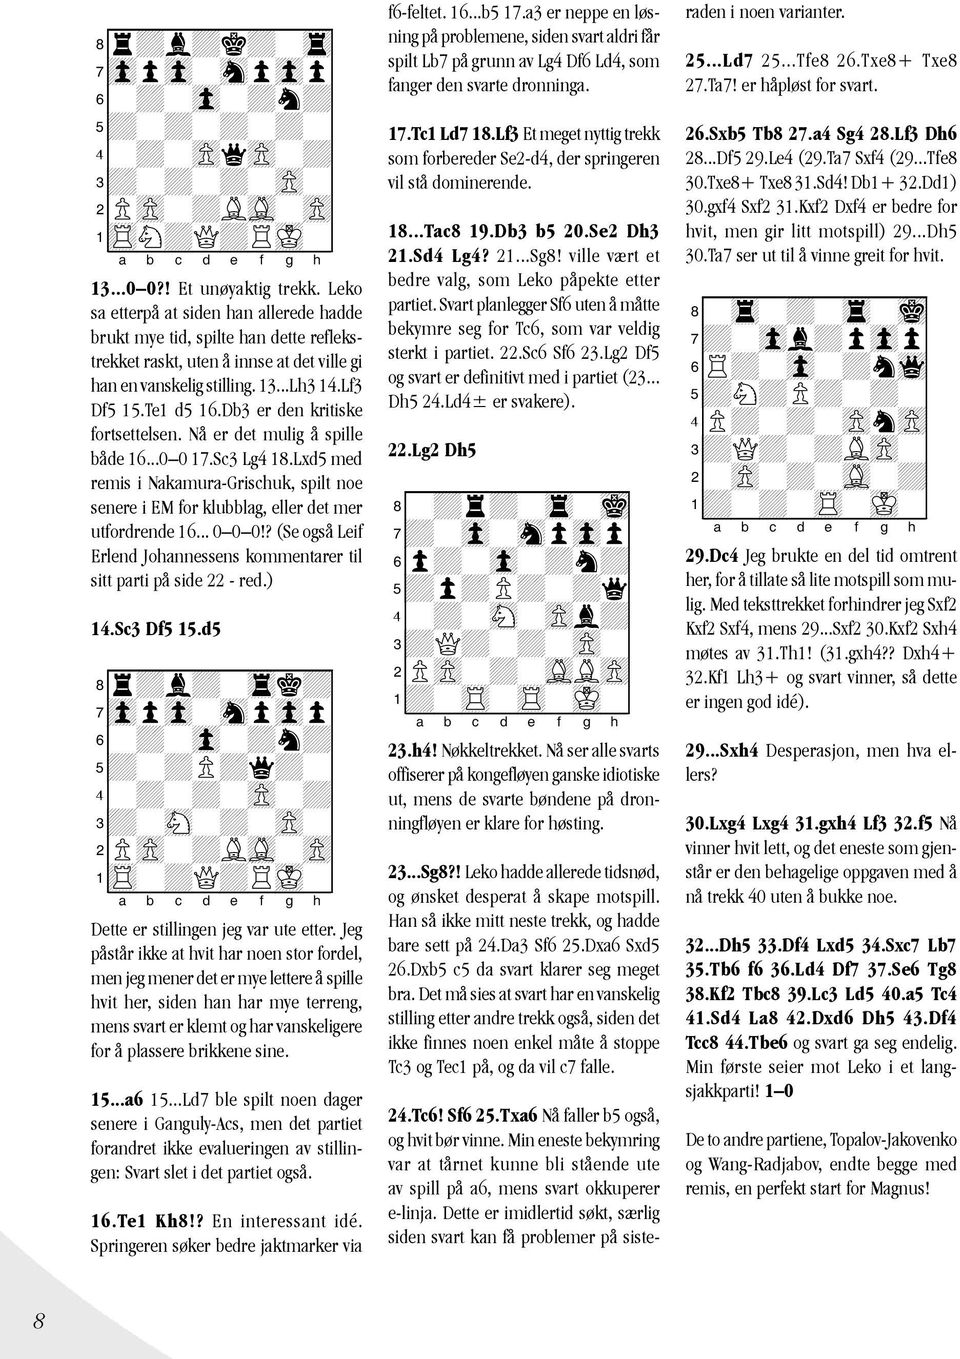 Db3 er den kritiske fortsettelsen. Nå er det mulig å spille både 16...0 0 17.Sc3 Lg4 18.Lxd5 med remis i Nakamura-Grischuk, spilt noe senere i EM for klubblag, eller det mer utfordrende 16... 0 0 0!